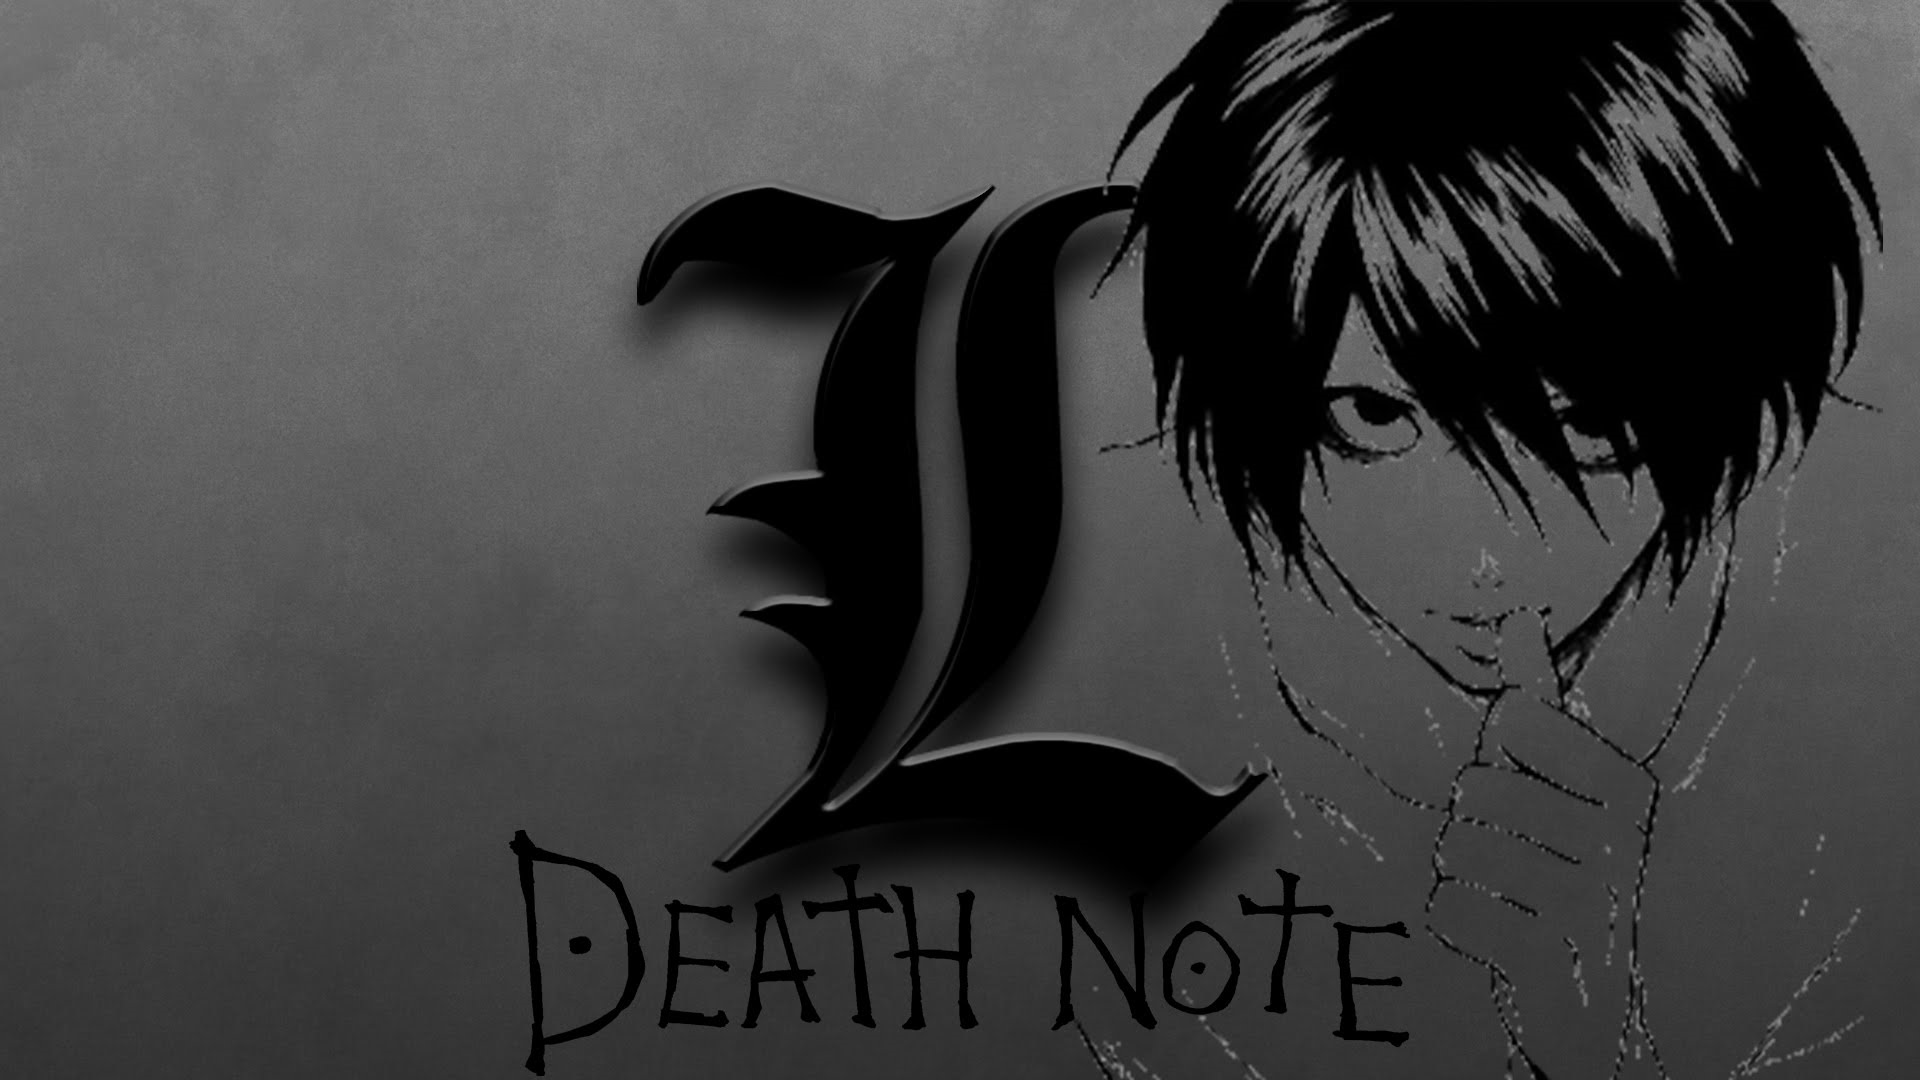 Обои на на note 30. L Death Note 1920 1080. L тетрадь смерти 1080. L Death Note смерть.